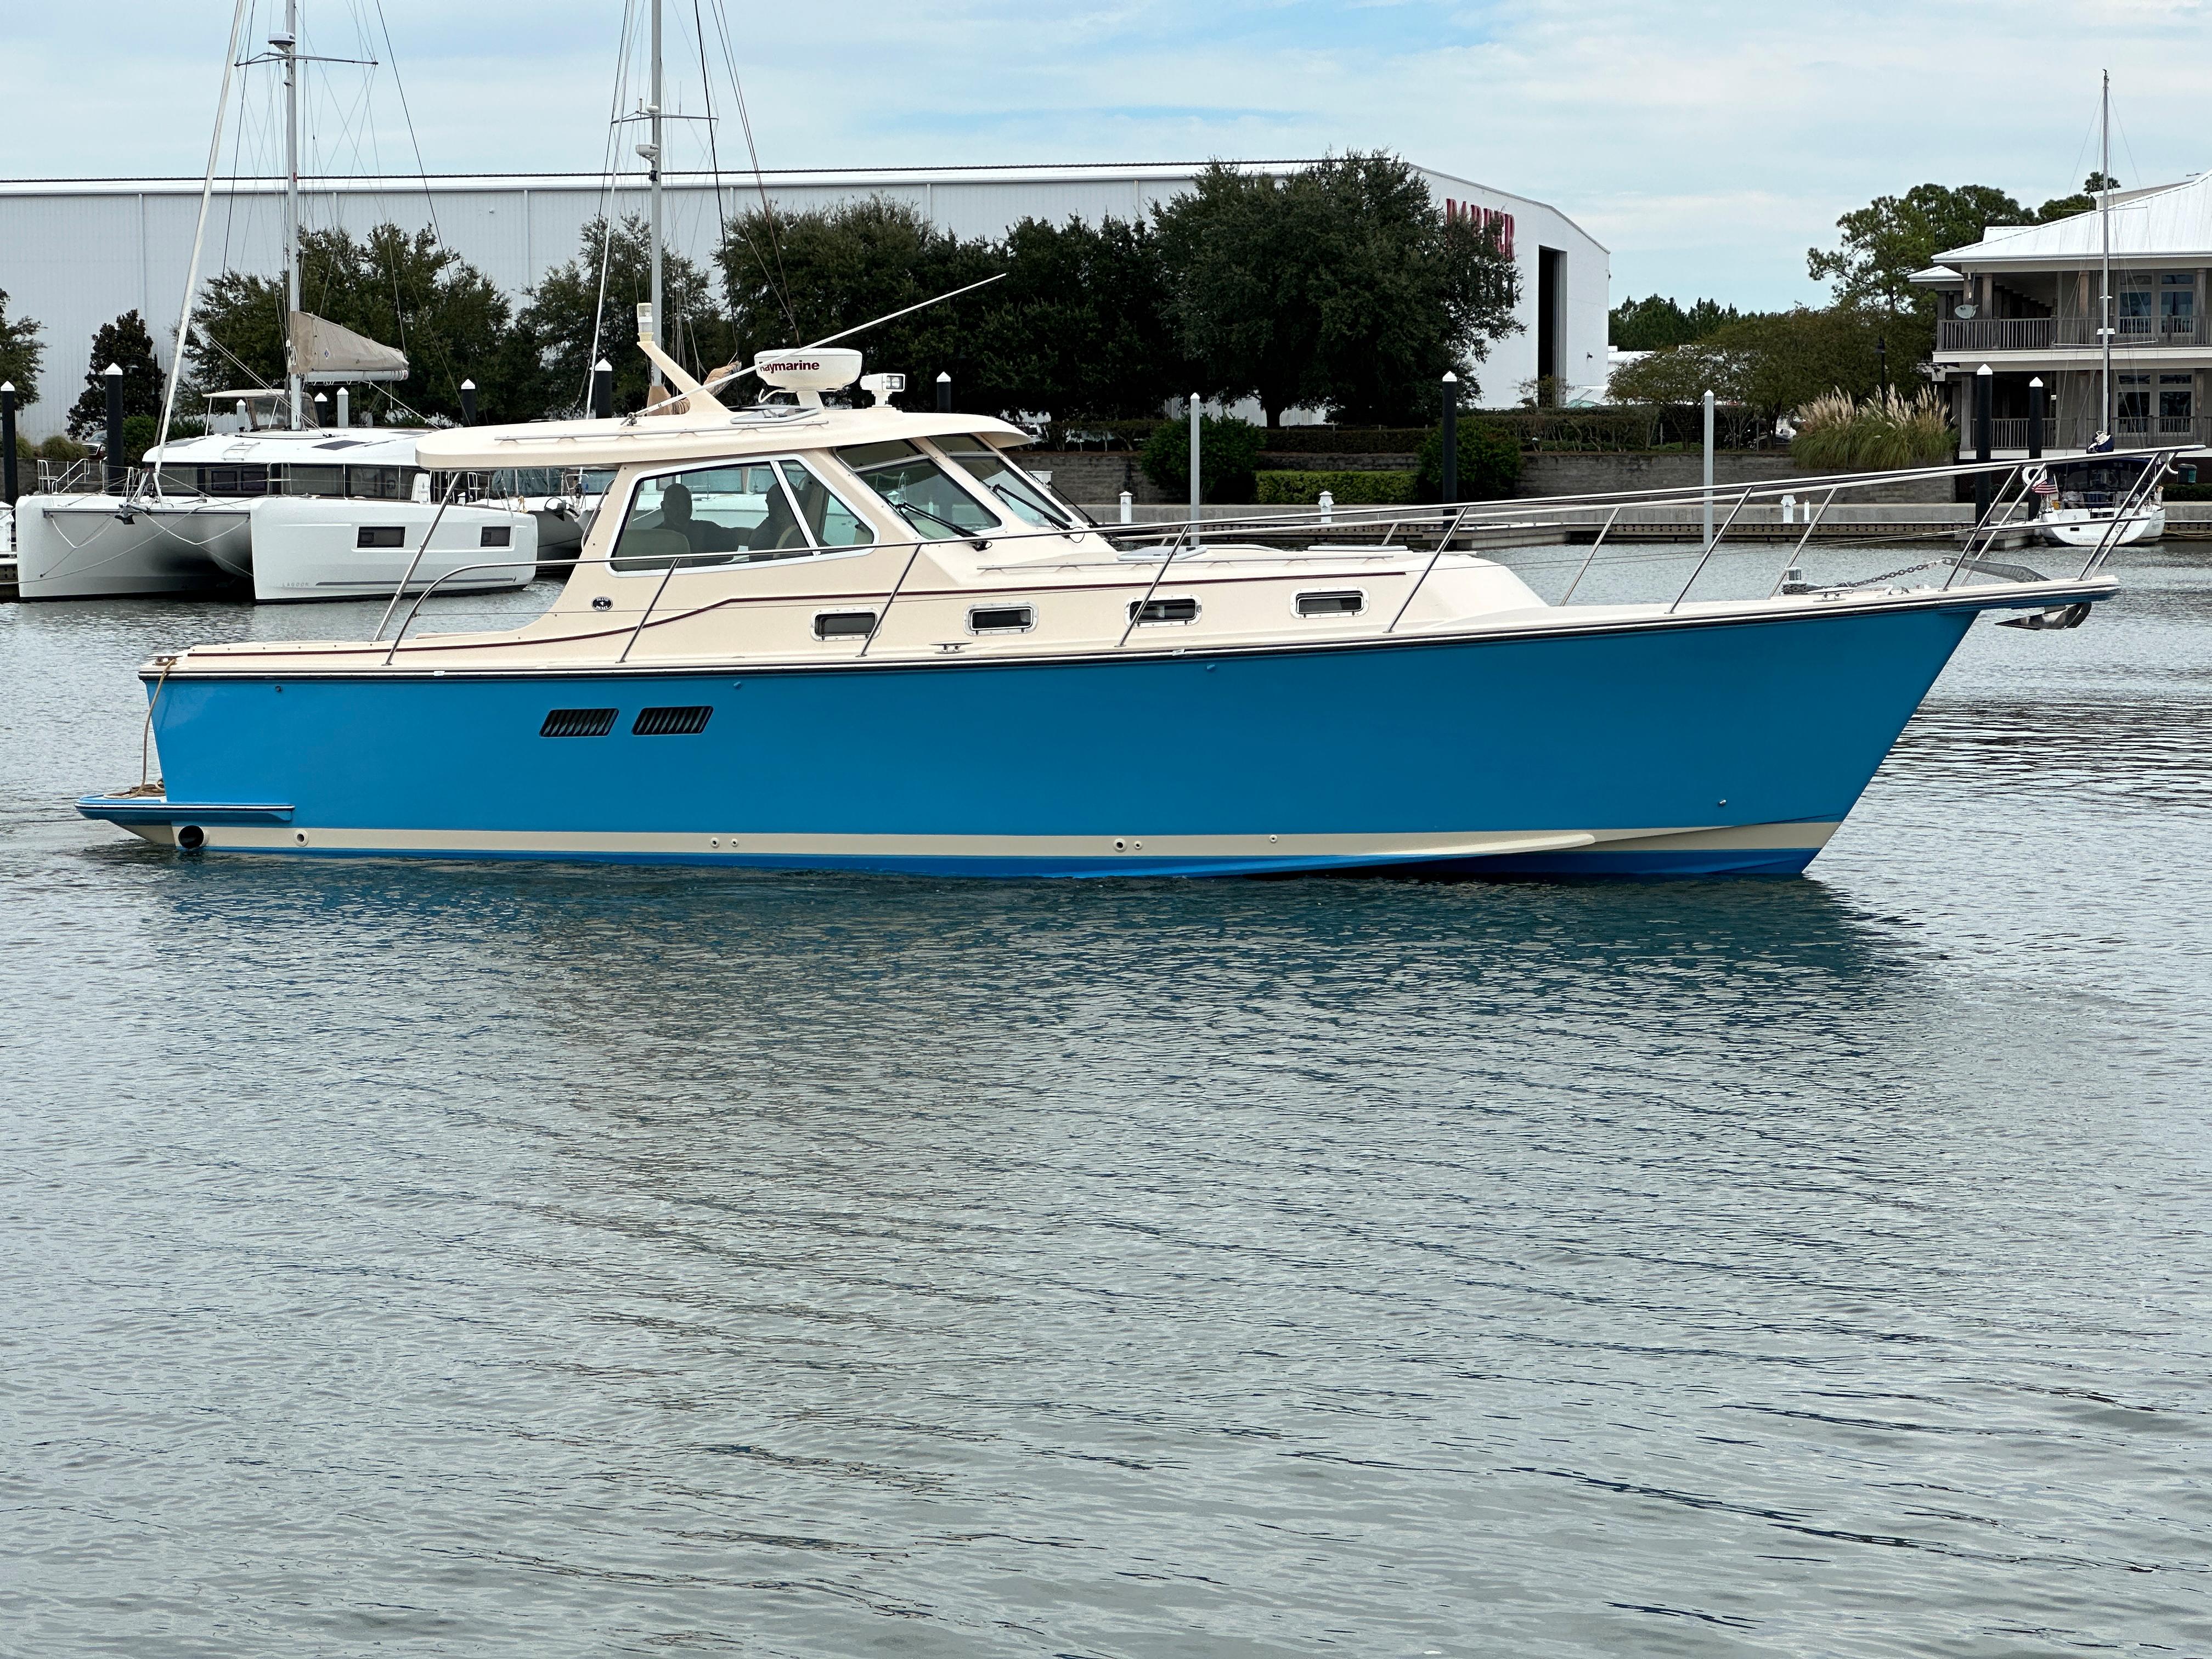 YETI Tumbler, Island Packet Yachts